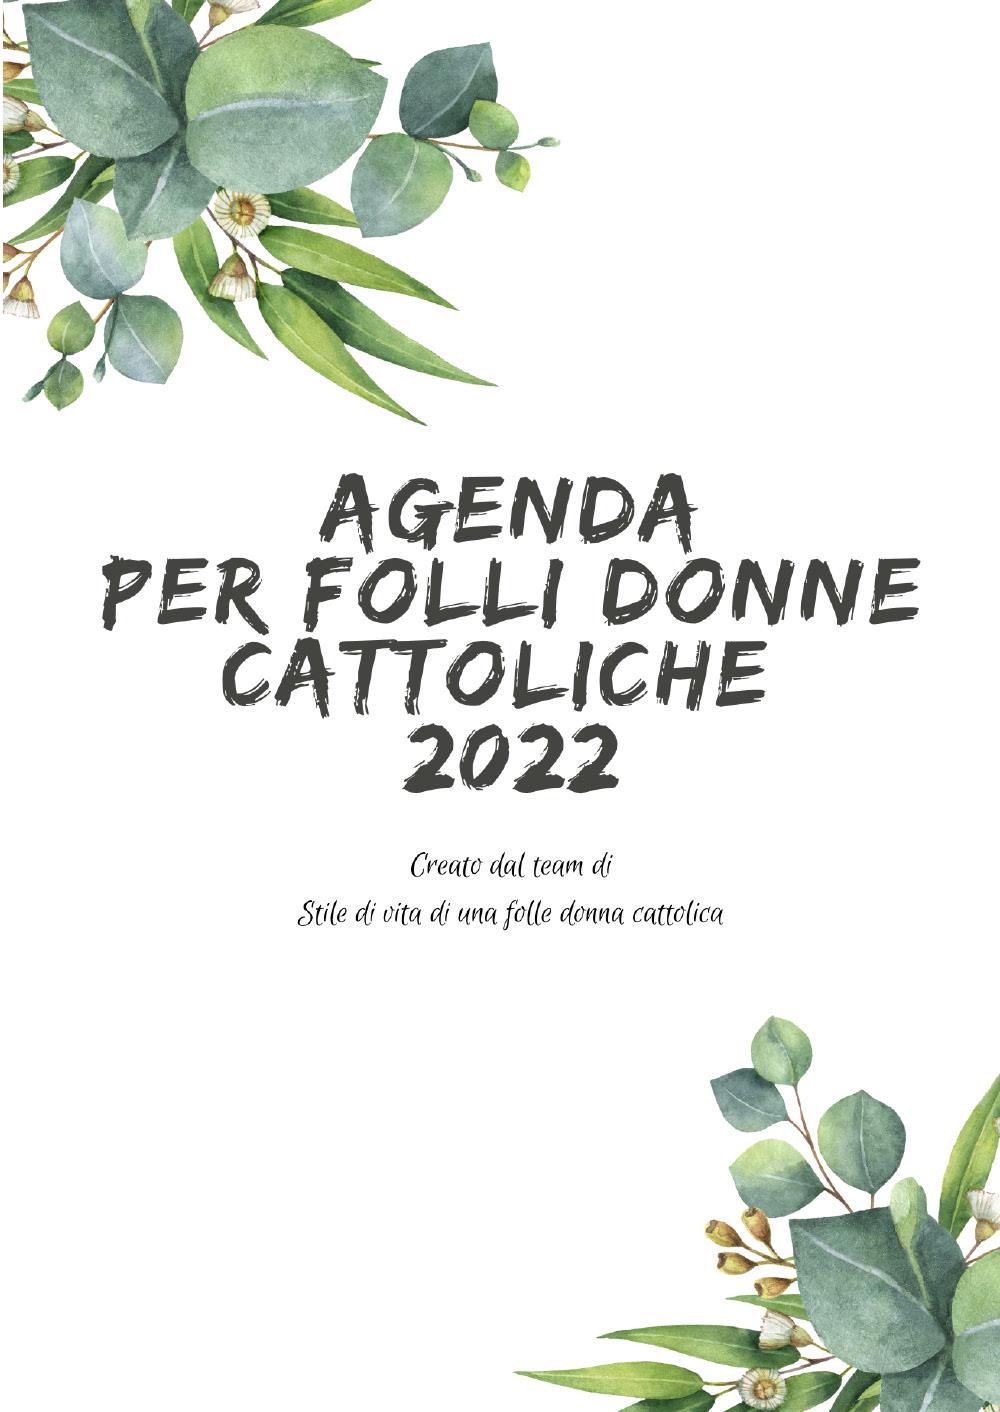 Agenda per folli donne cattoliche 2022